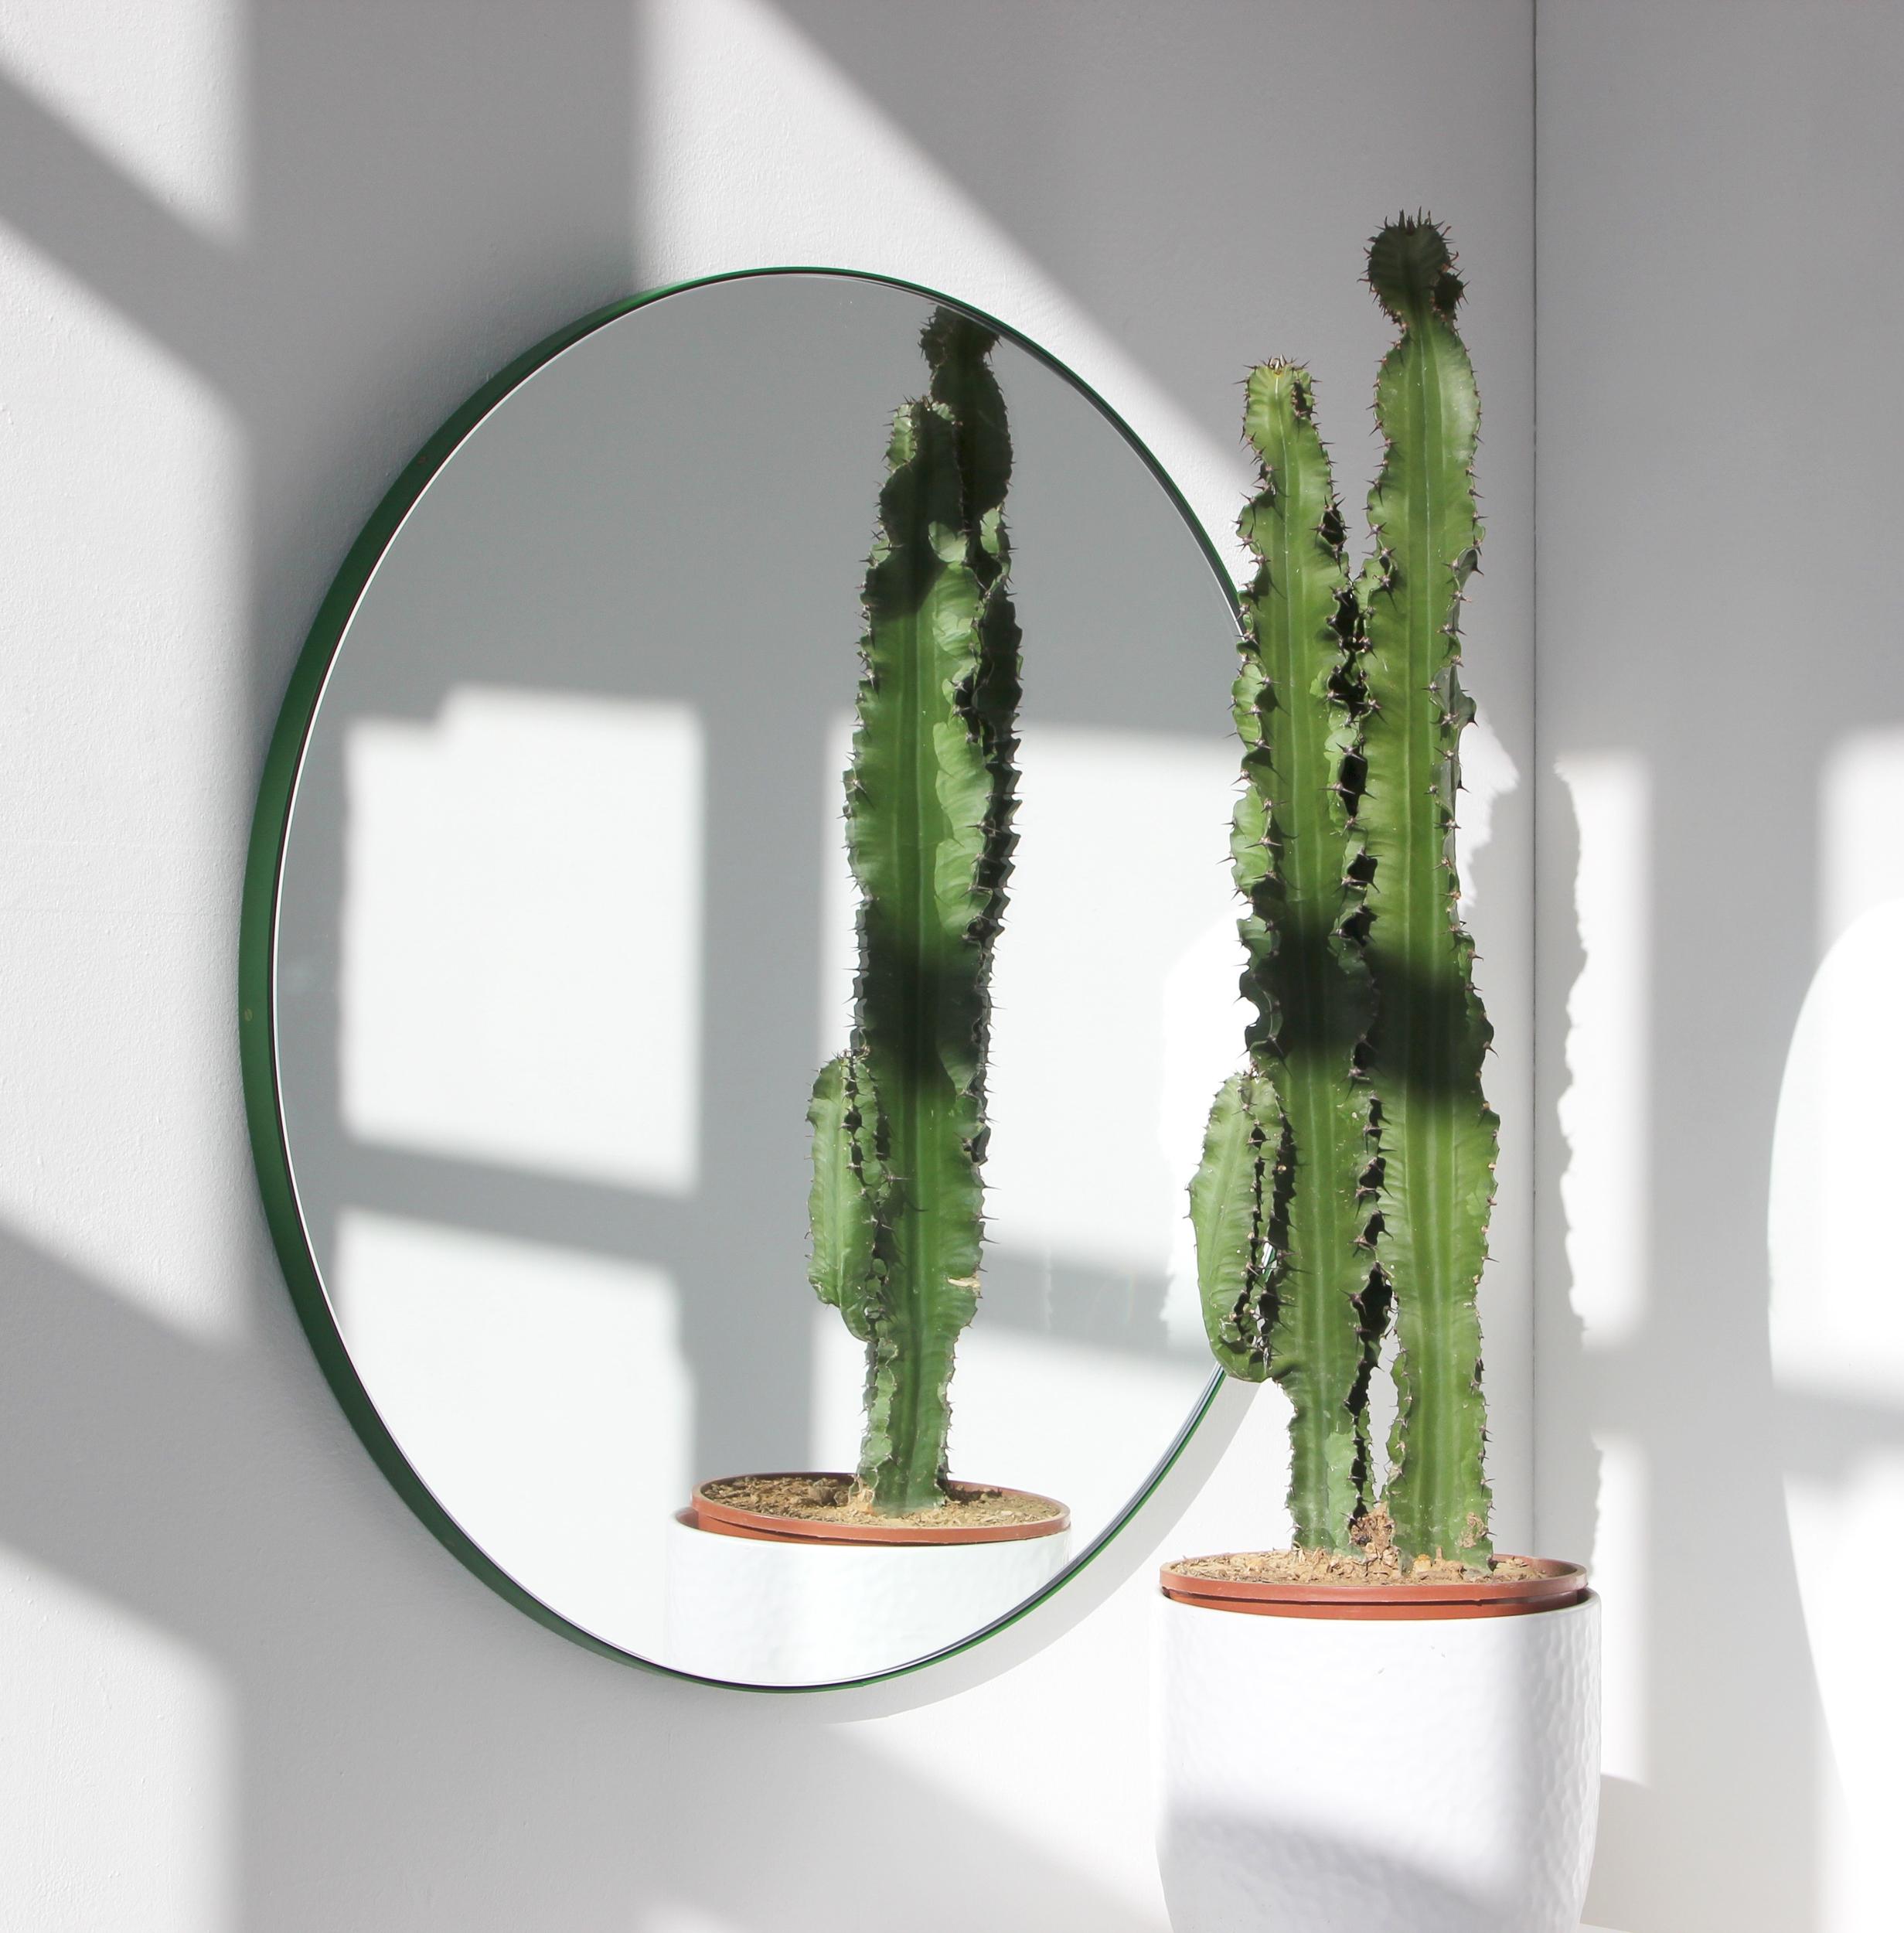 Minimalistischer runder Spiegel mit einem lebendigen, grün pulverbeschichteten Aluminiumrahmen. Entworfen und handgefertigt in London, UK.

Unsere Spiegel sind mit einem integrierten französischen Befestigungssystem (geteilte Leisten) ausgestattet,